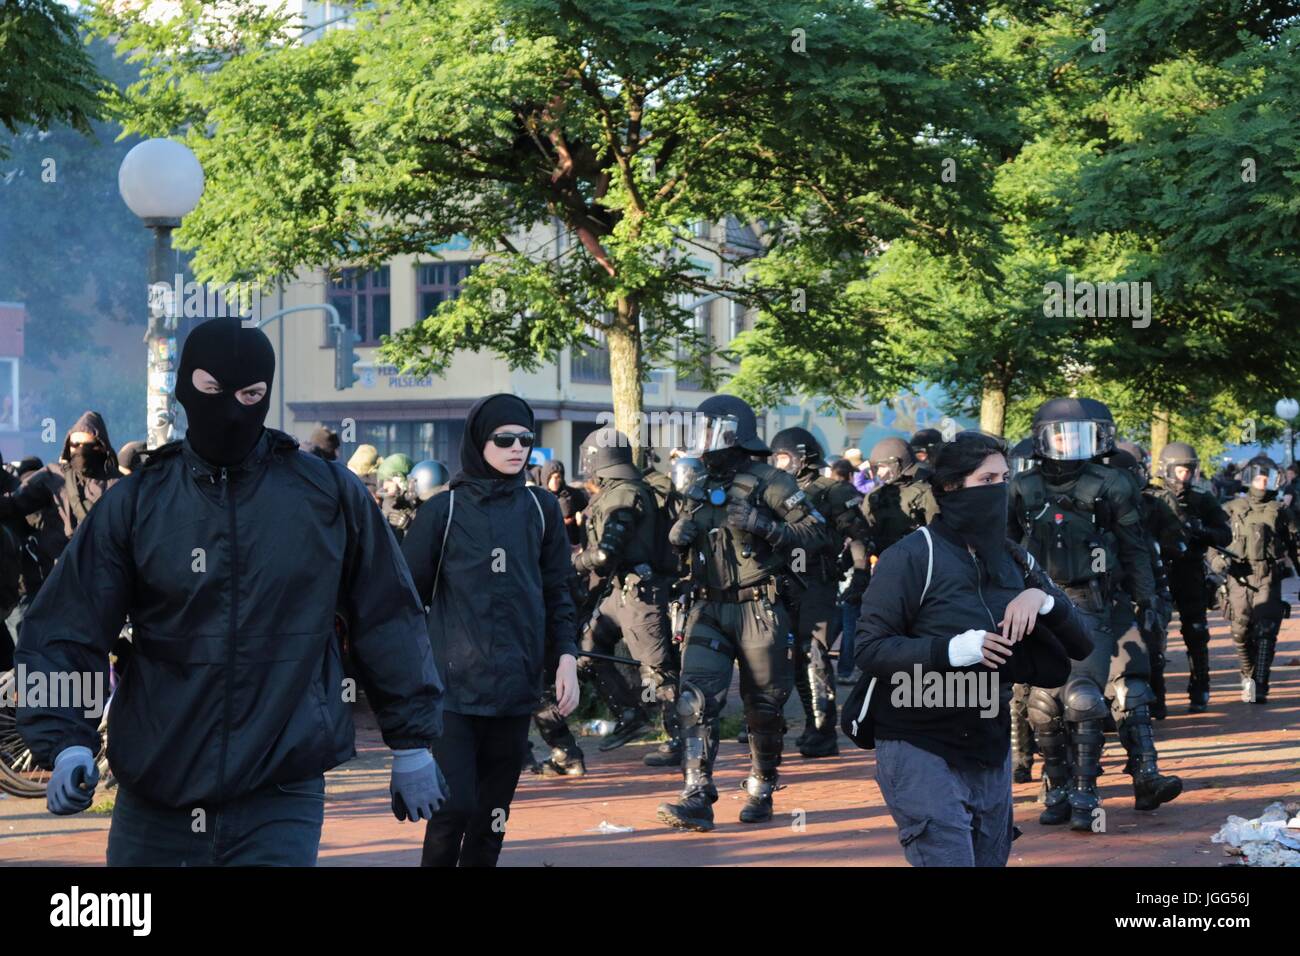 Hambourg, Allemagne. 6 juillet, 2017. Les manifestants fuir comme la police anti-émeute réprimer une manifestation anti g20 Crédit : Conall Kearney/Alamy Live News Banque D'Images